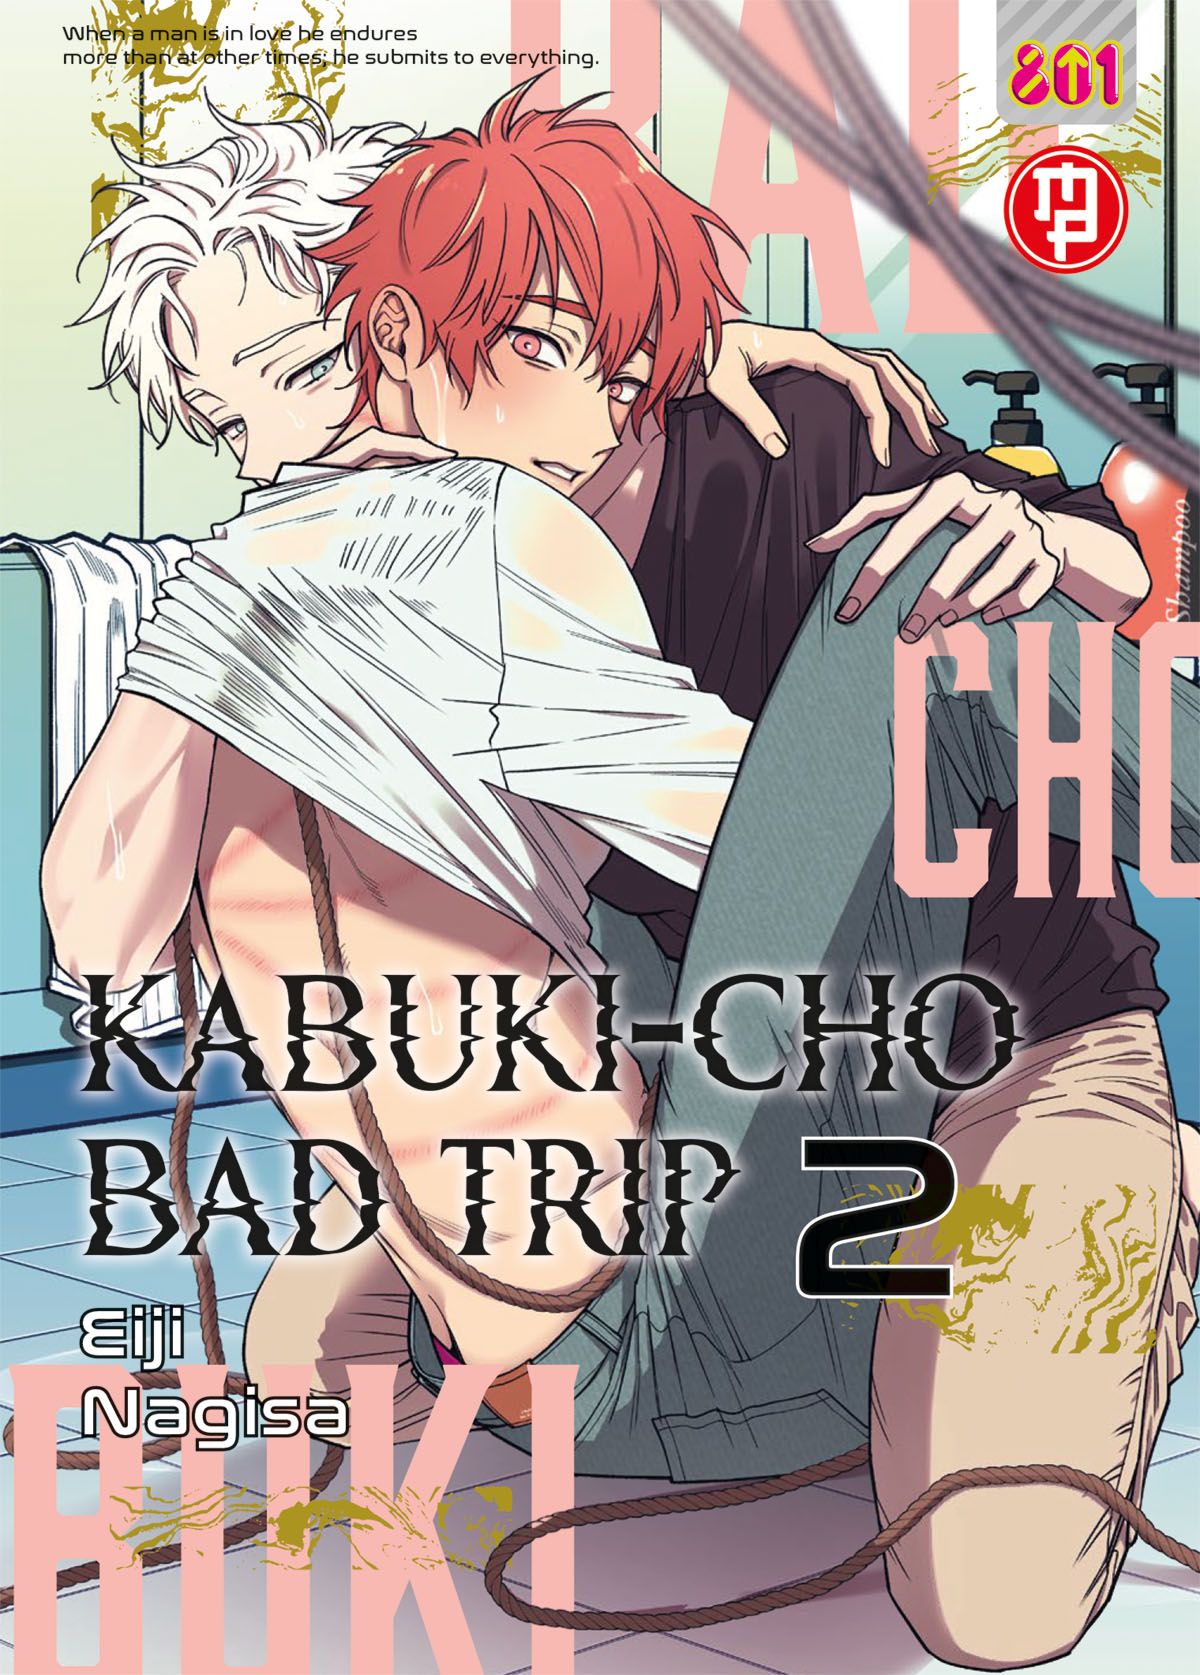 KABUKI-CHO BAD TRIP #002